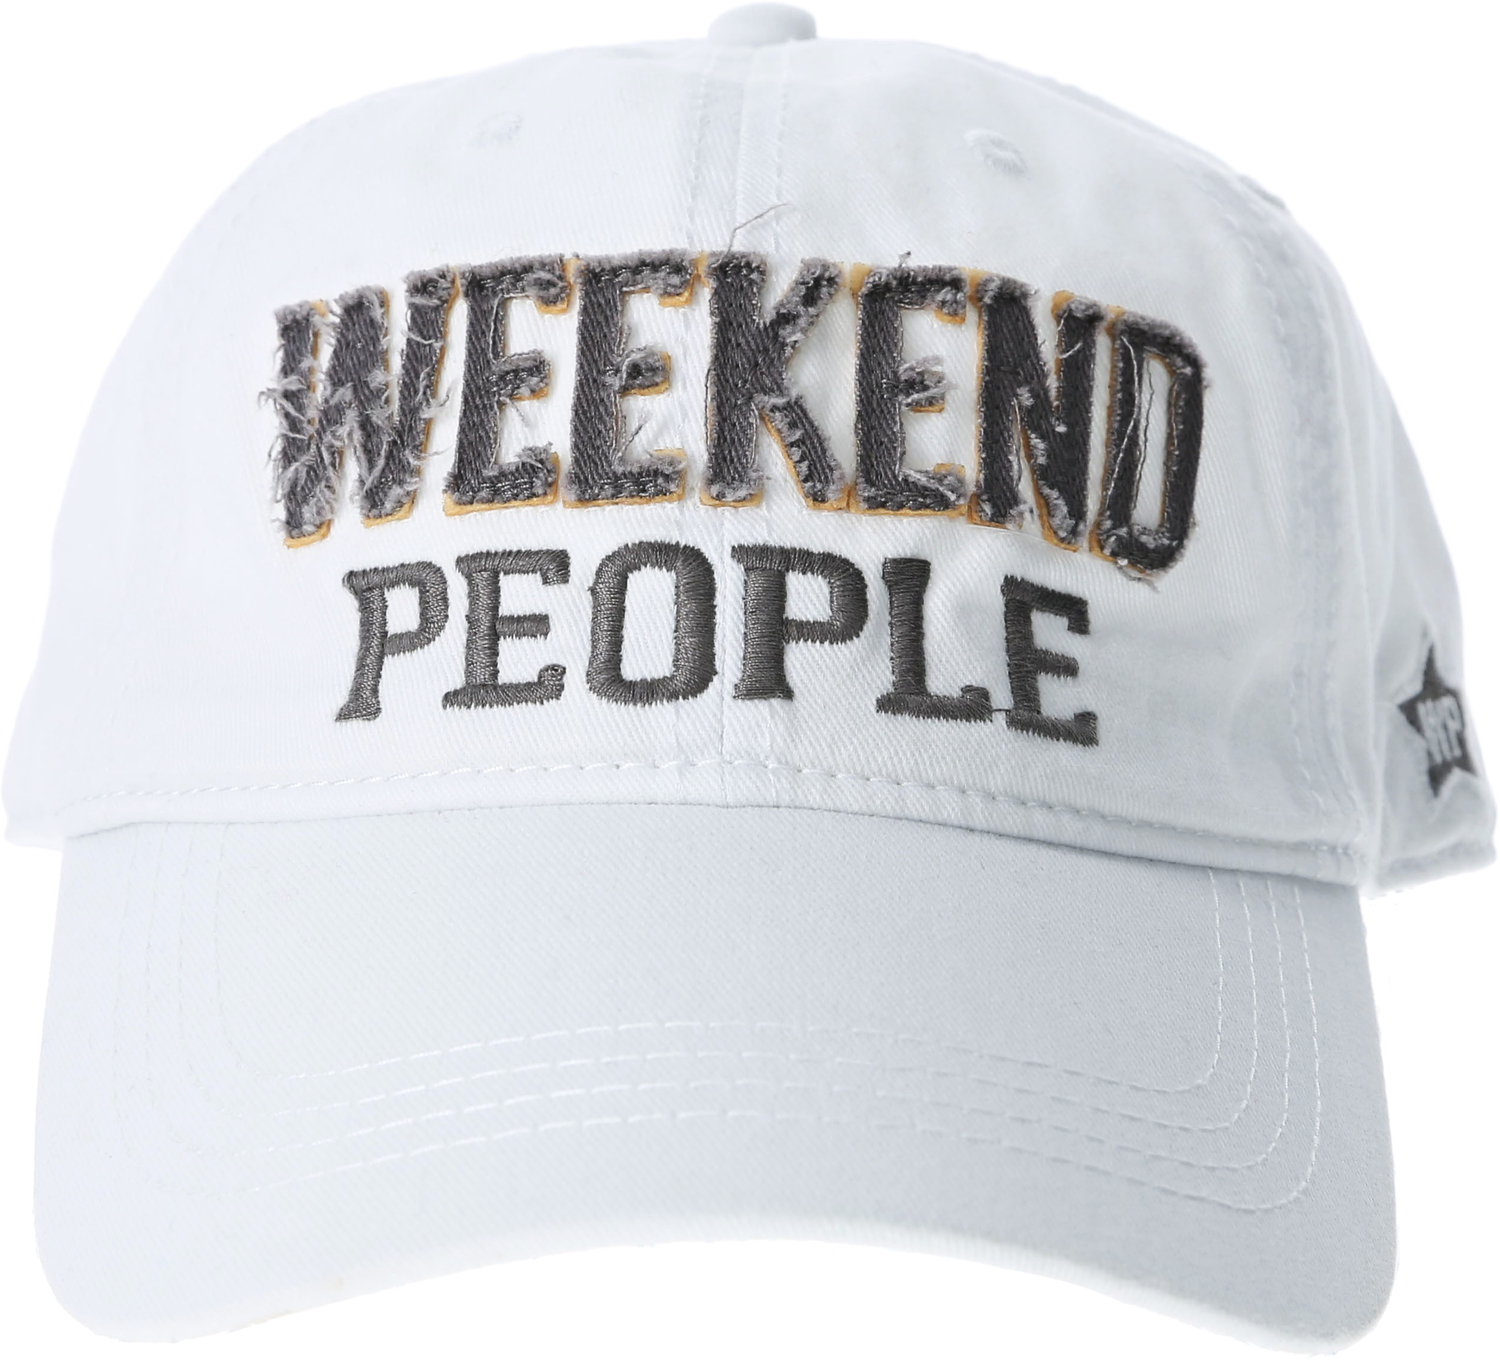 Weekend People by We People - Weekend People - White Adjustable Hat